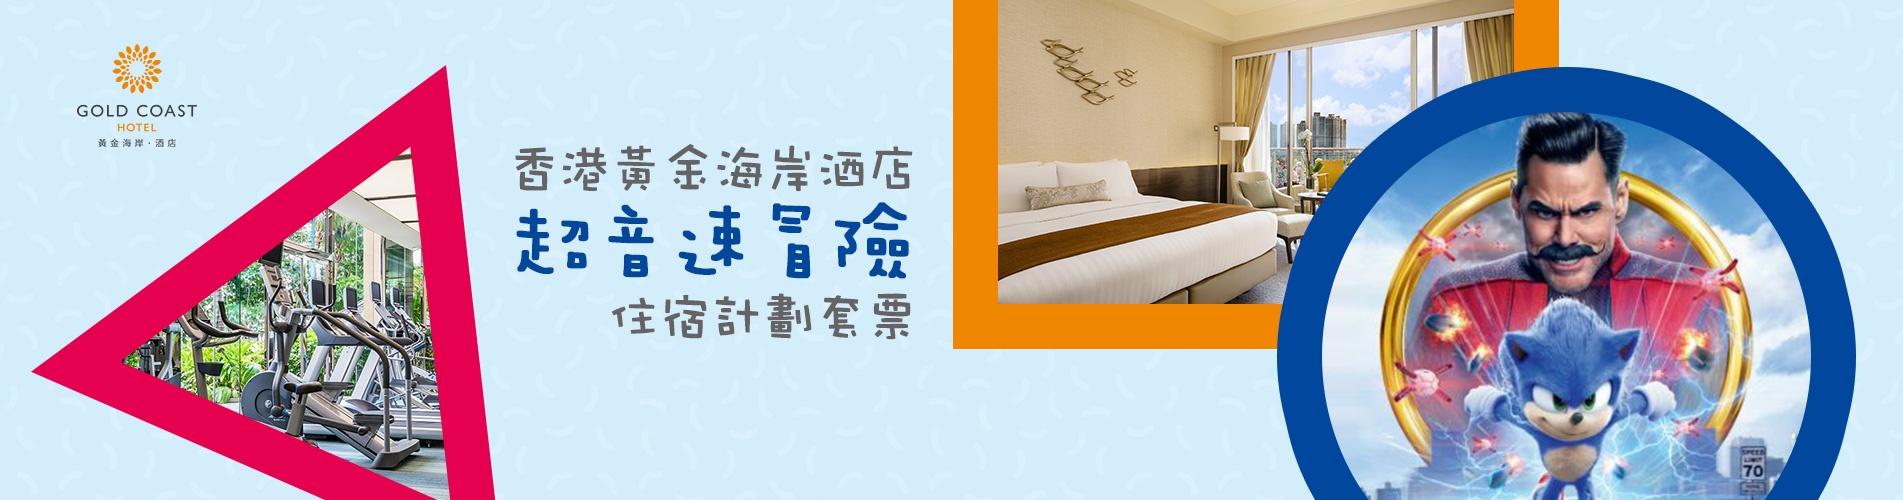 香港黃金海岸酒店「超音速冒險」住宿計劃